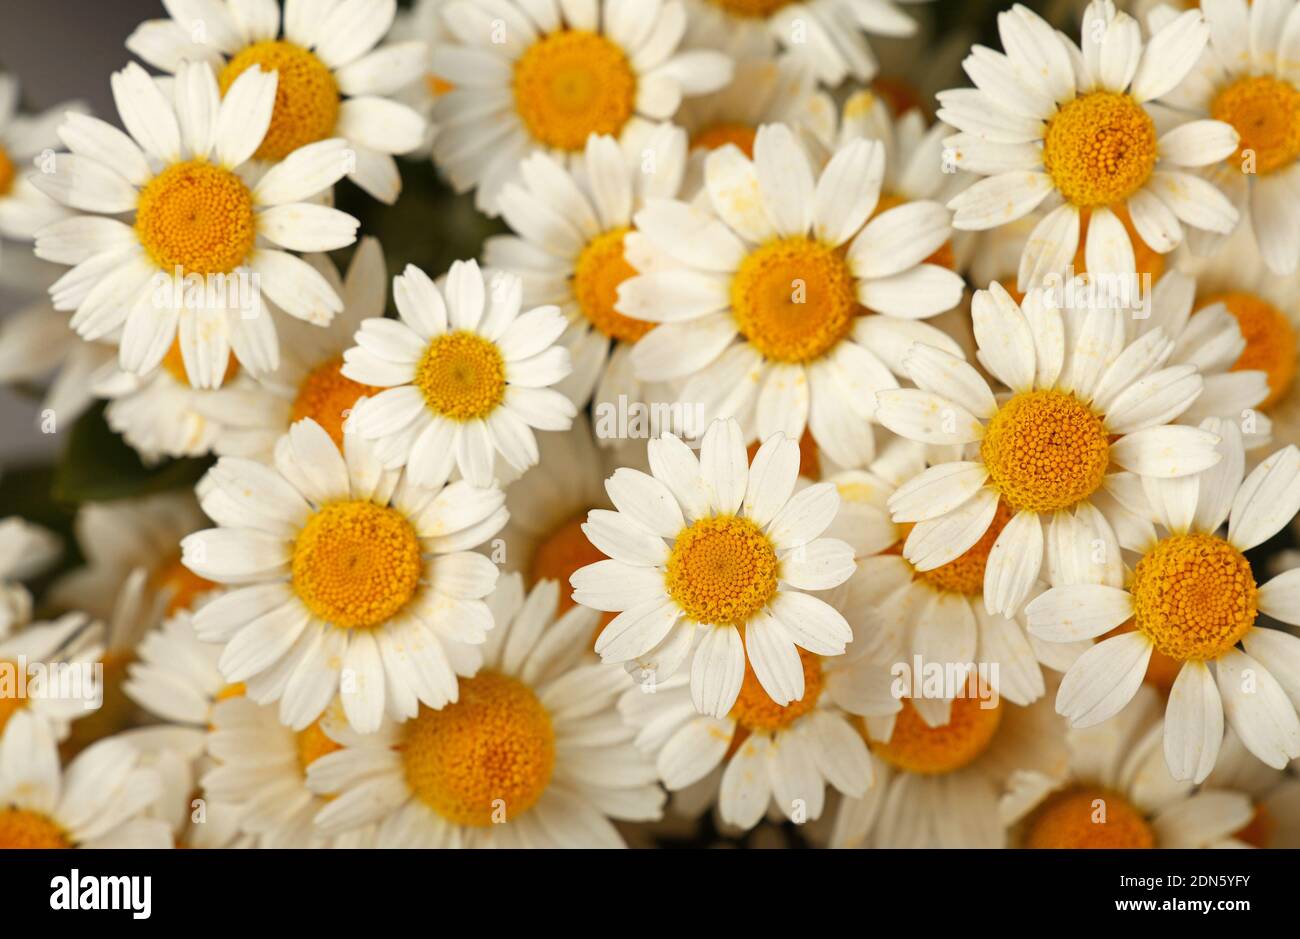 Full Frame Shot Of White Daisy Flowers Stock Photo